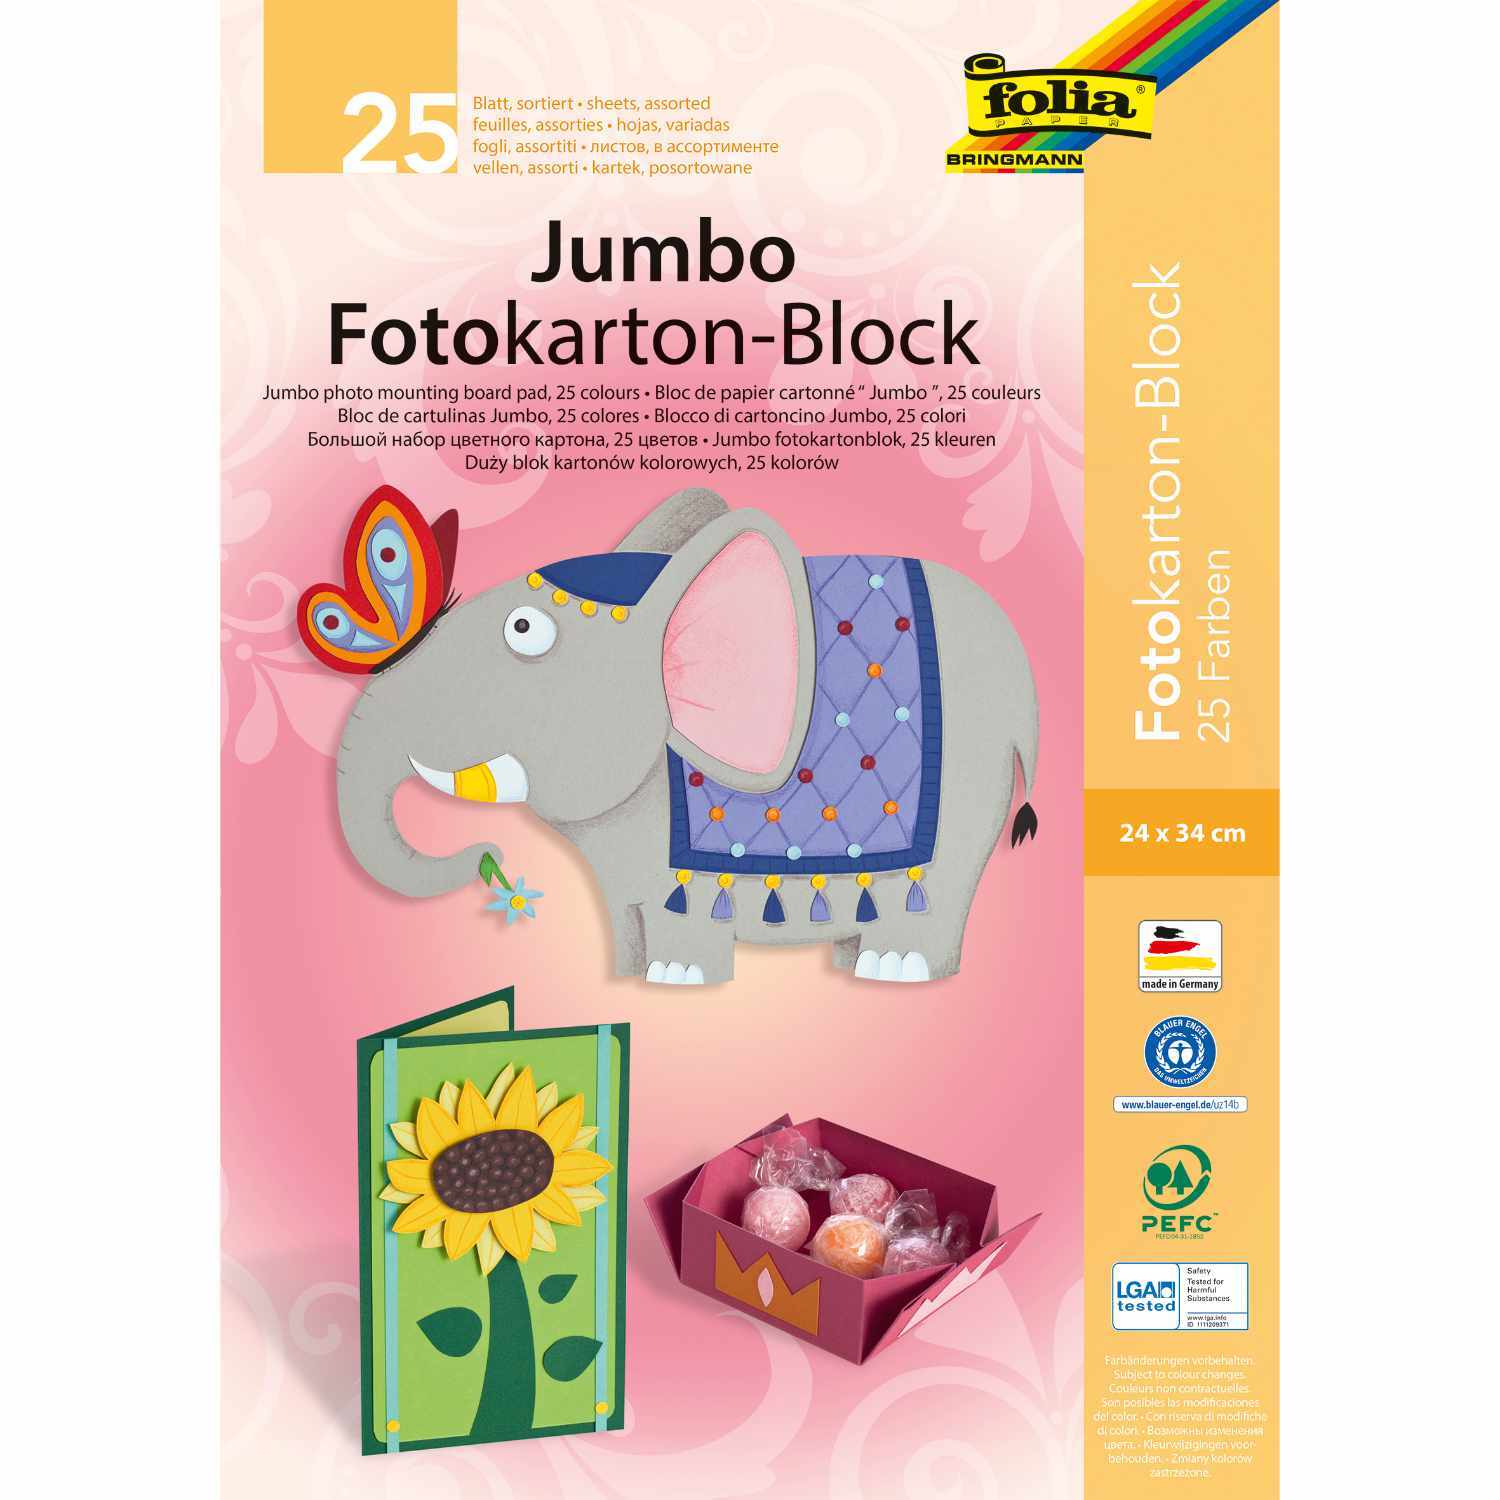 Jumbo Fotokarton-Block 24x34cm 300g/m² 25 Blatt